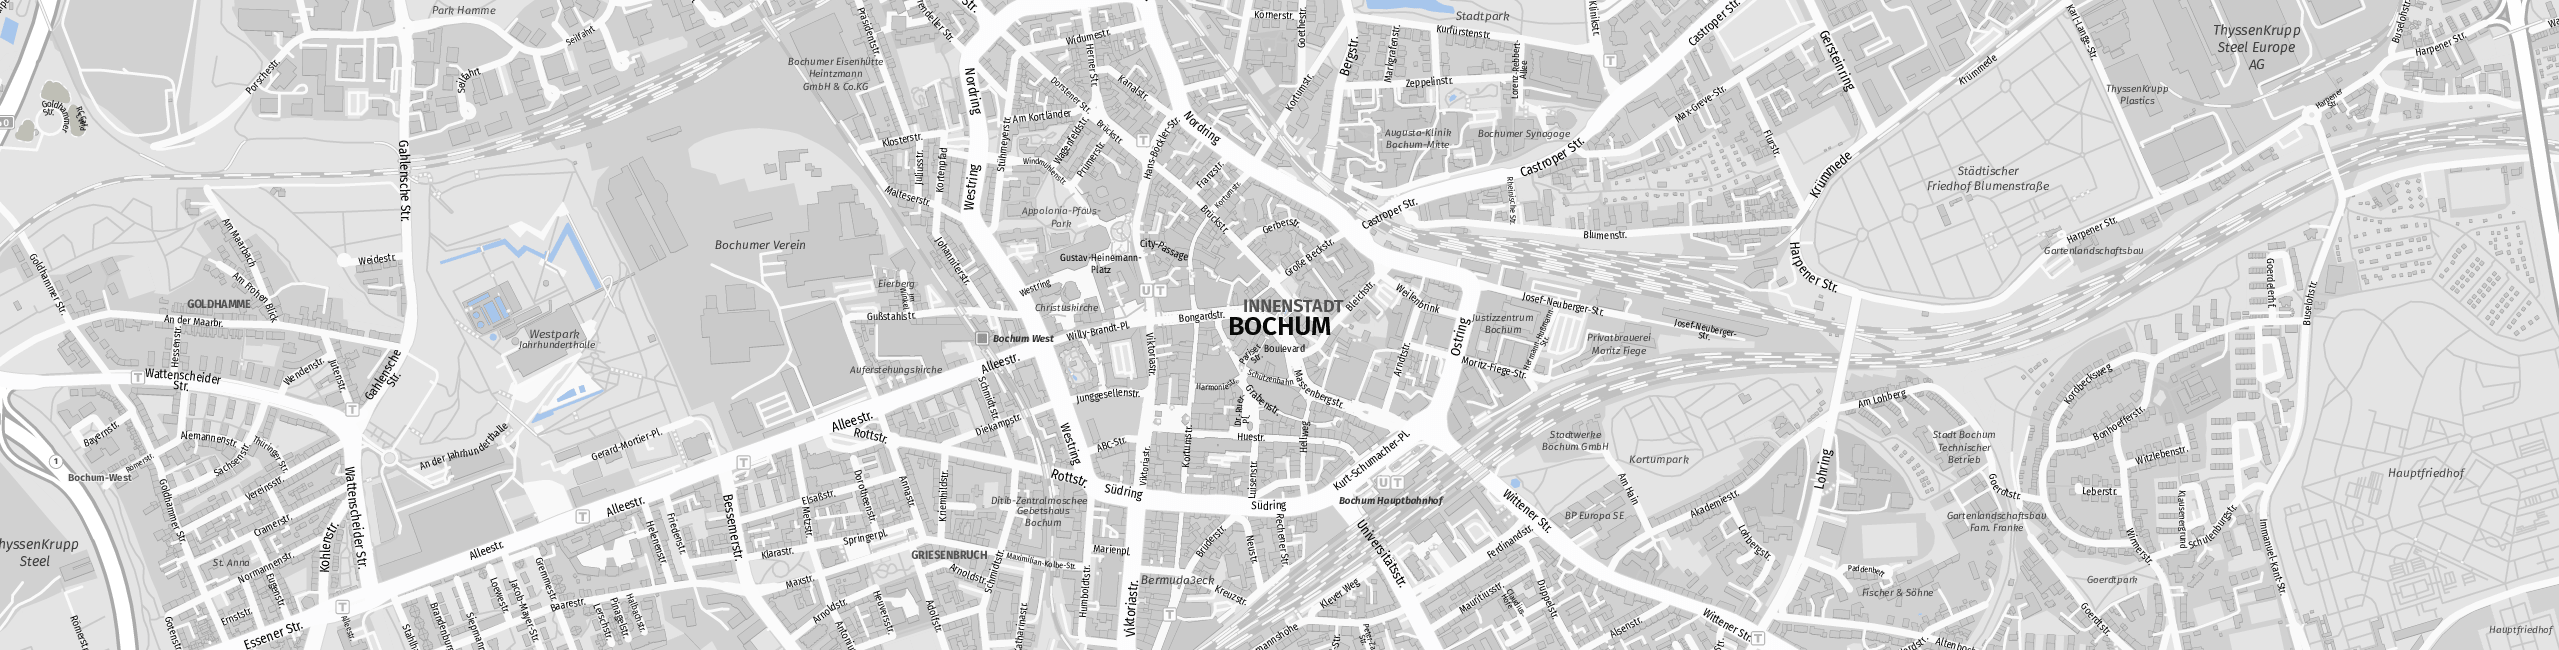 Touristischer Stadtplan mit Sehenswürdigkeiten und Straßenverzeichnis Bochum Stadtplan: SP 1:18000 